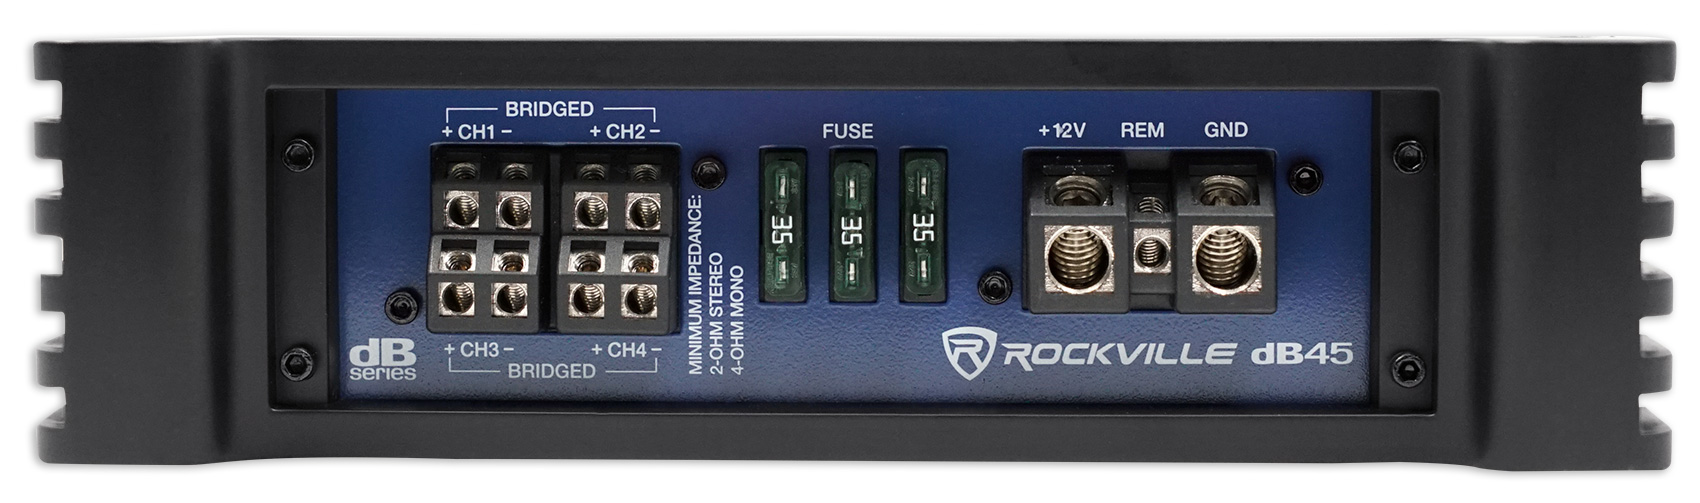 Rockville dB45 3200 Watt/800w RMS 4 Channel Amplifier Car Stereo Amp